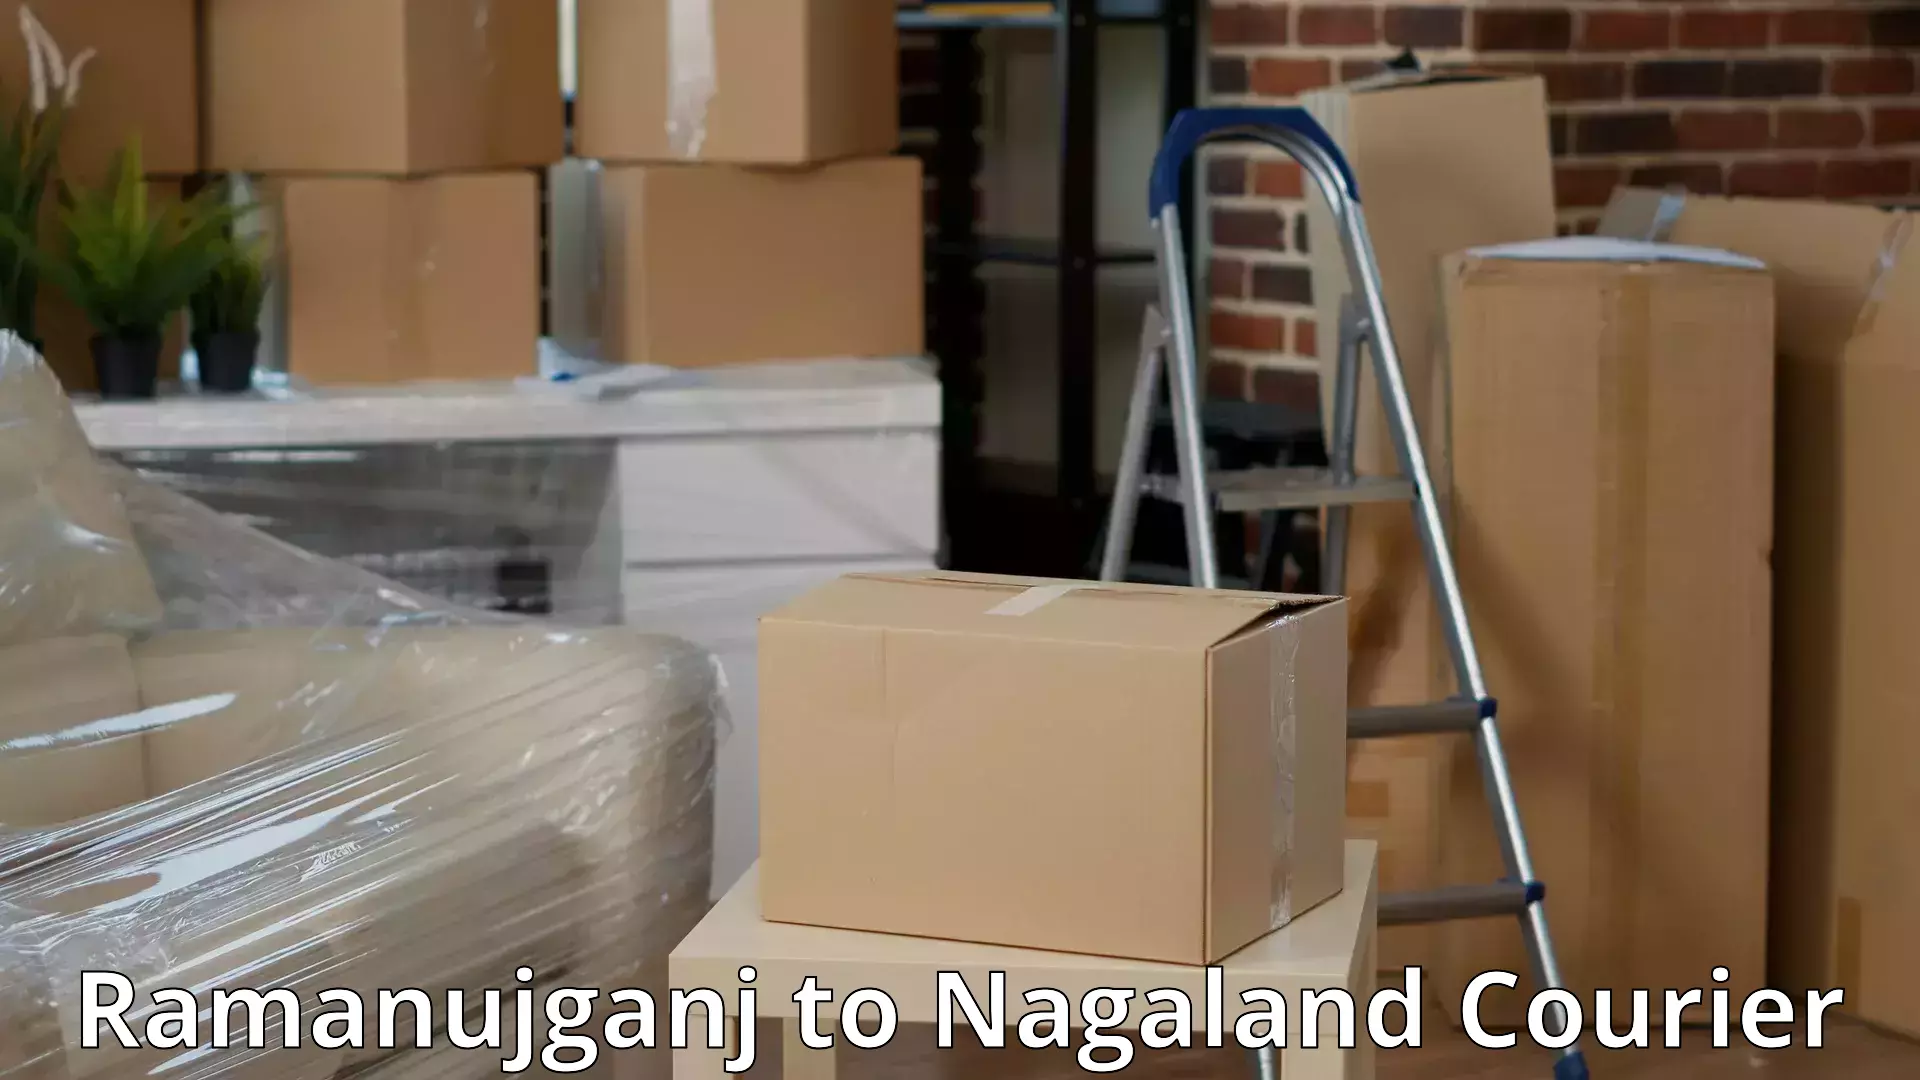 Professional goods transport Ramanujganj to NIT Nagaland